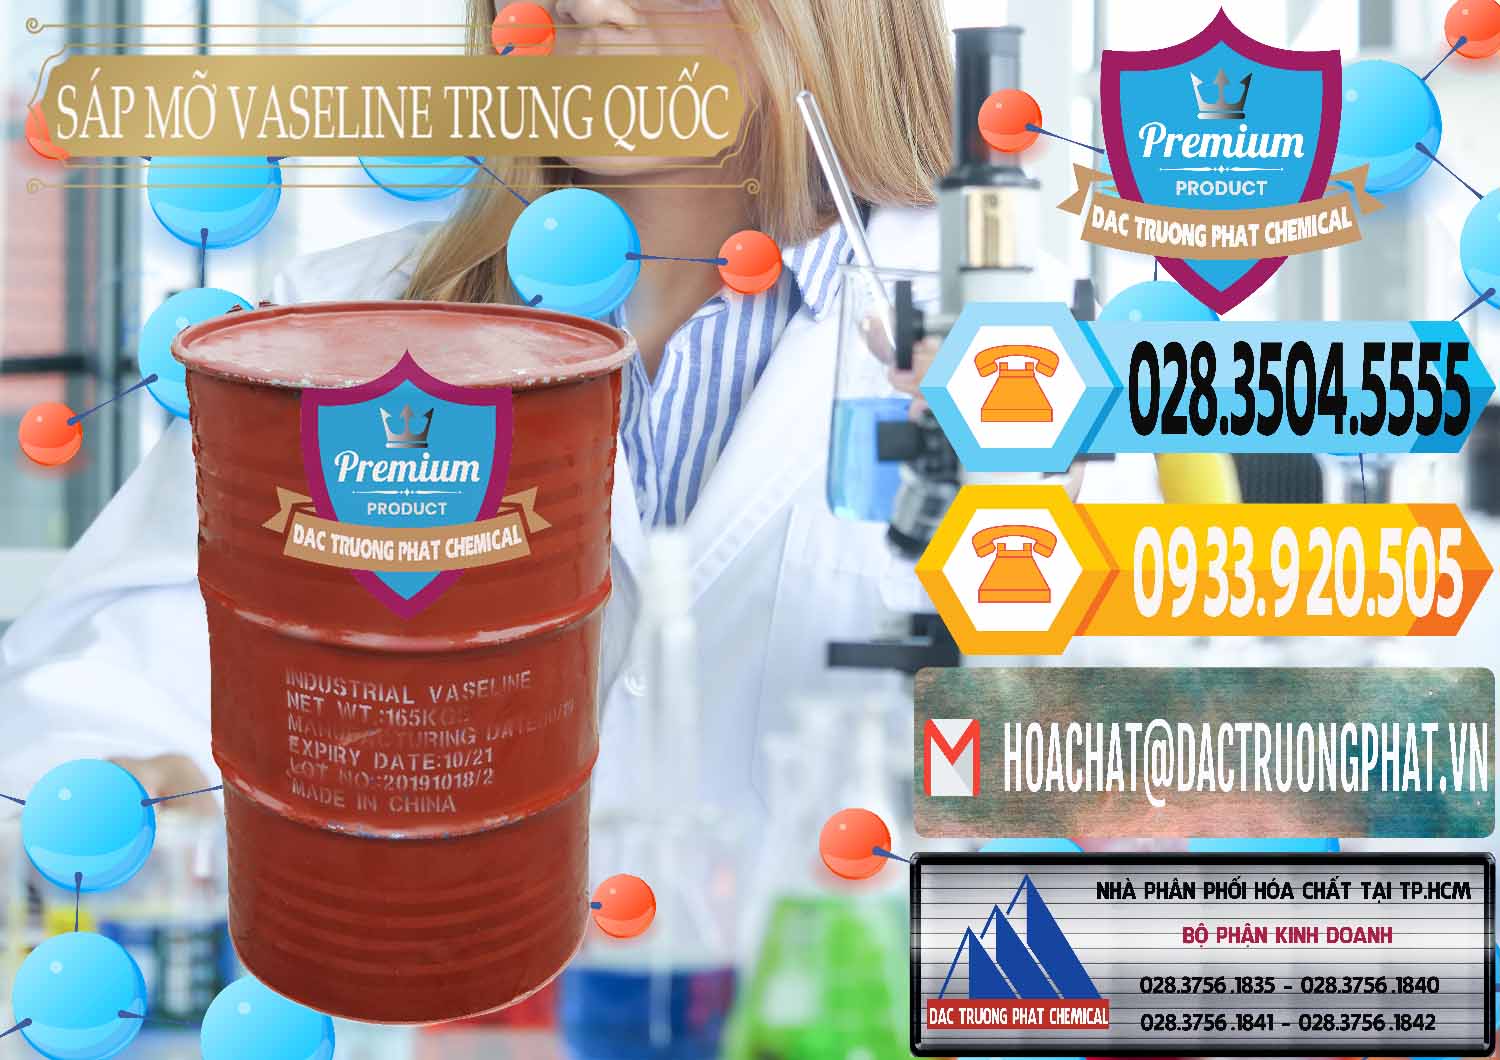 Công ty bán & cung ứng Sáp Mỡ Vaseline Trung Quốc China - 0122 - Cty phân phối và cung cấp hóa chất tại TP.HCM - hoachattayrua.net